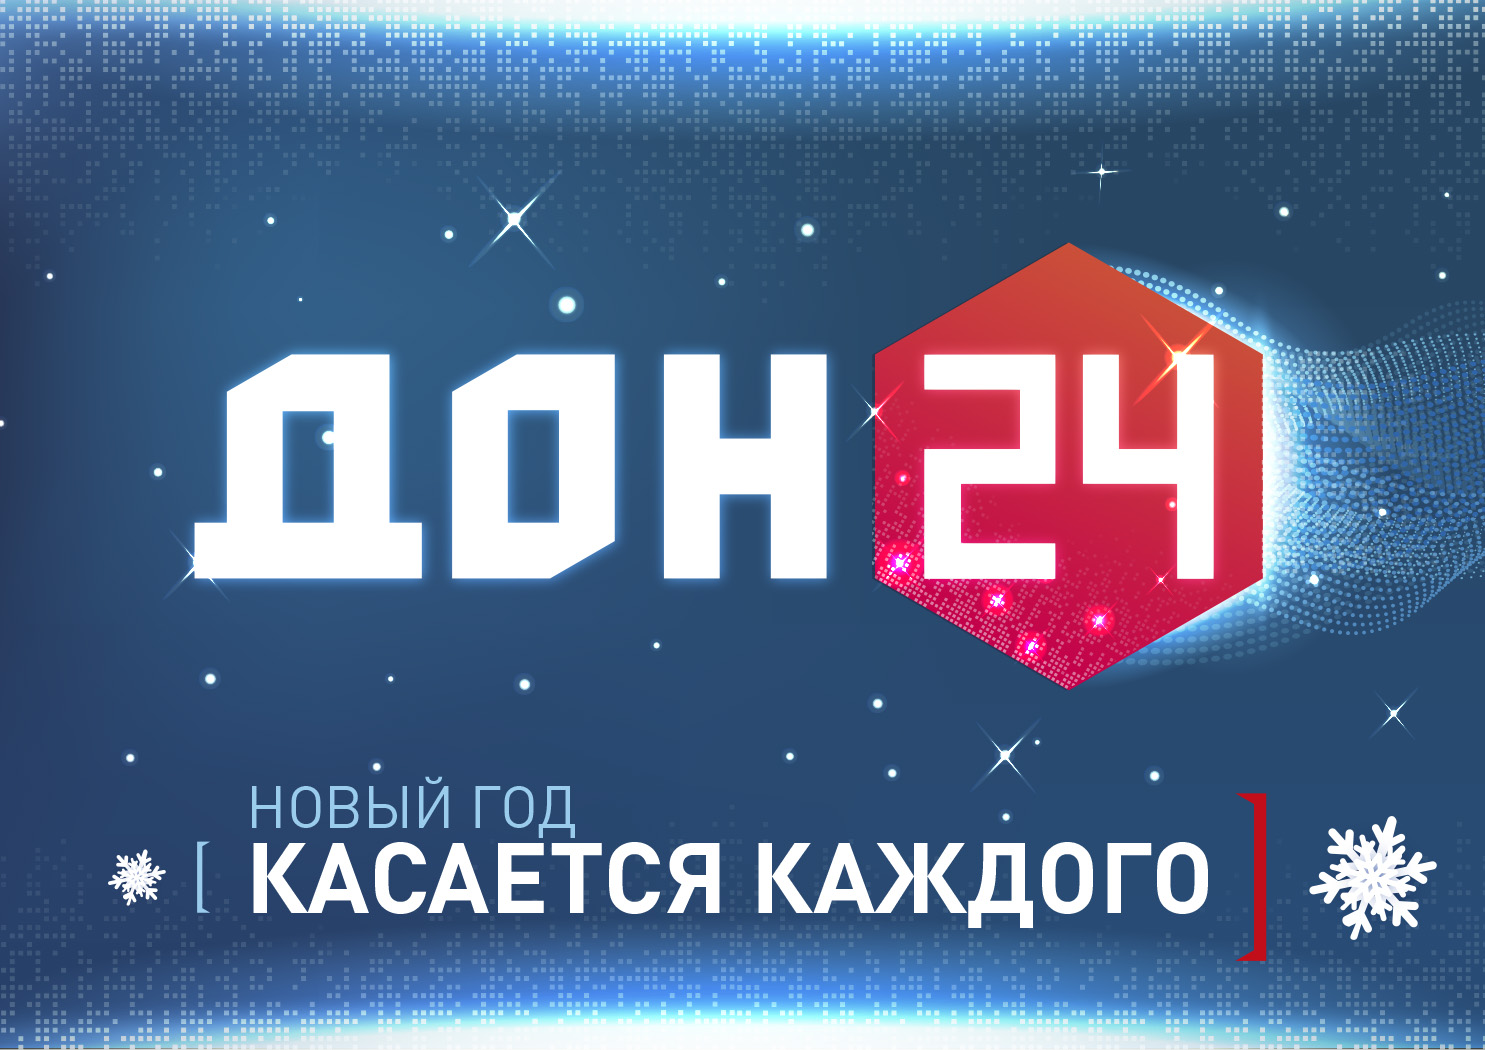 Дон 24 телефон. Дон 24. Телеканал Дон 24. Дон 24 логотип канала. Дон24.ру.